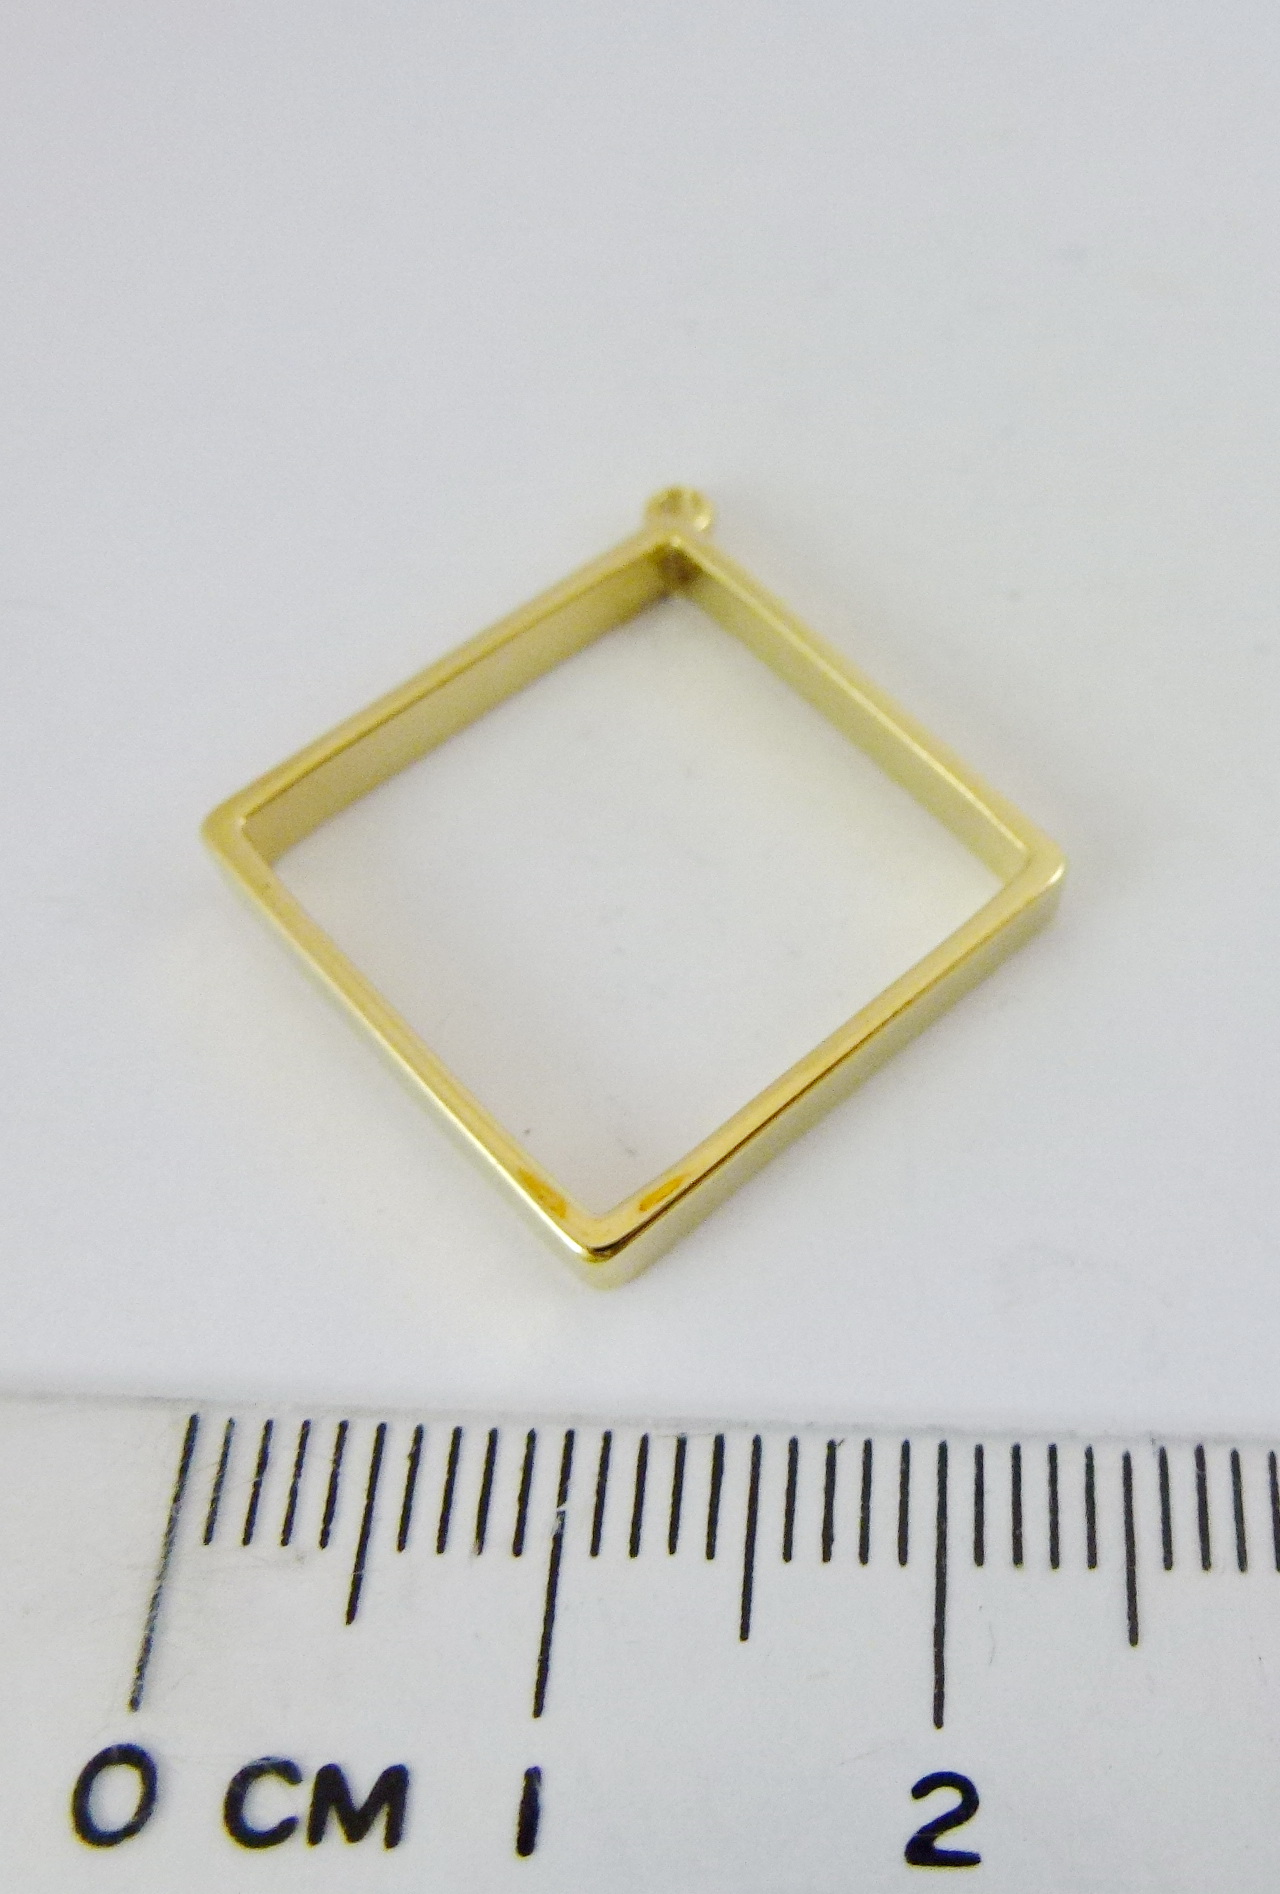 26mm銅鍍金色單孔菱形框